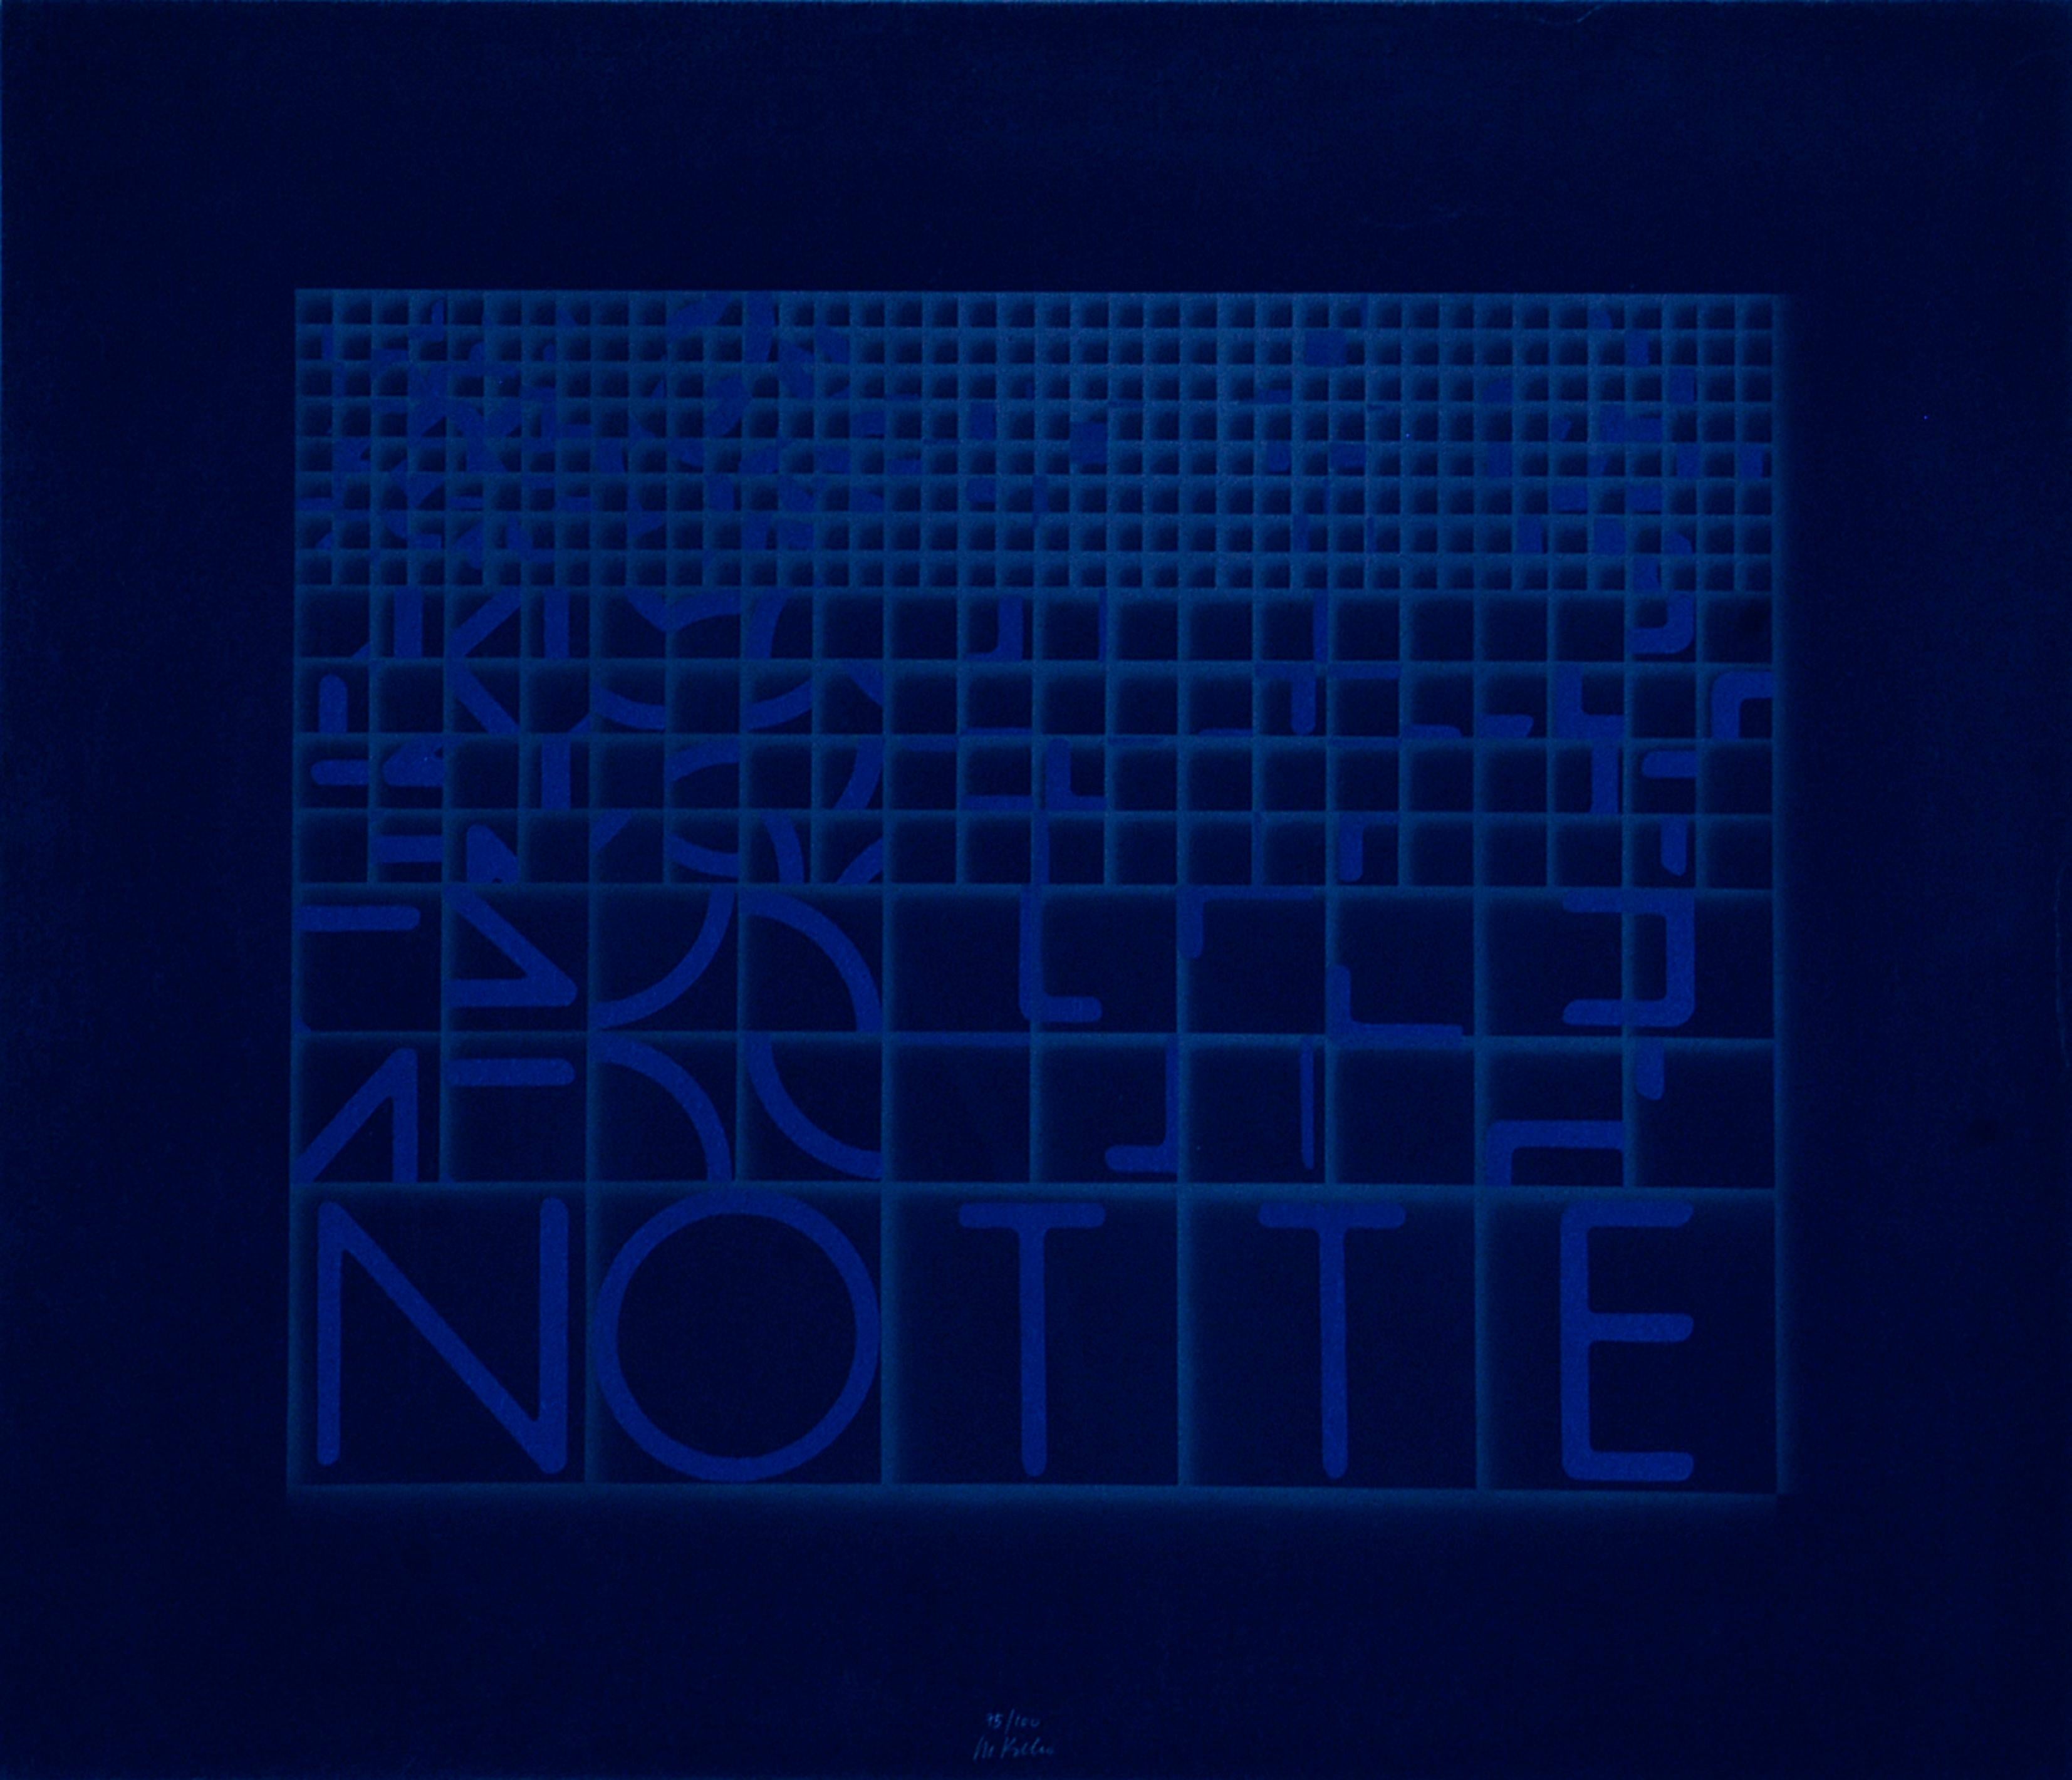 Bruno Di Bello Abstract Print - Notte (Night) - Original Screen Print by Bruno di Bello - 1980 ca.